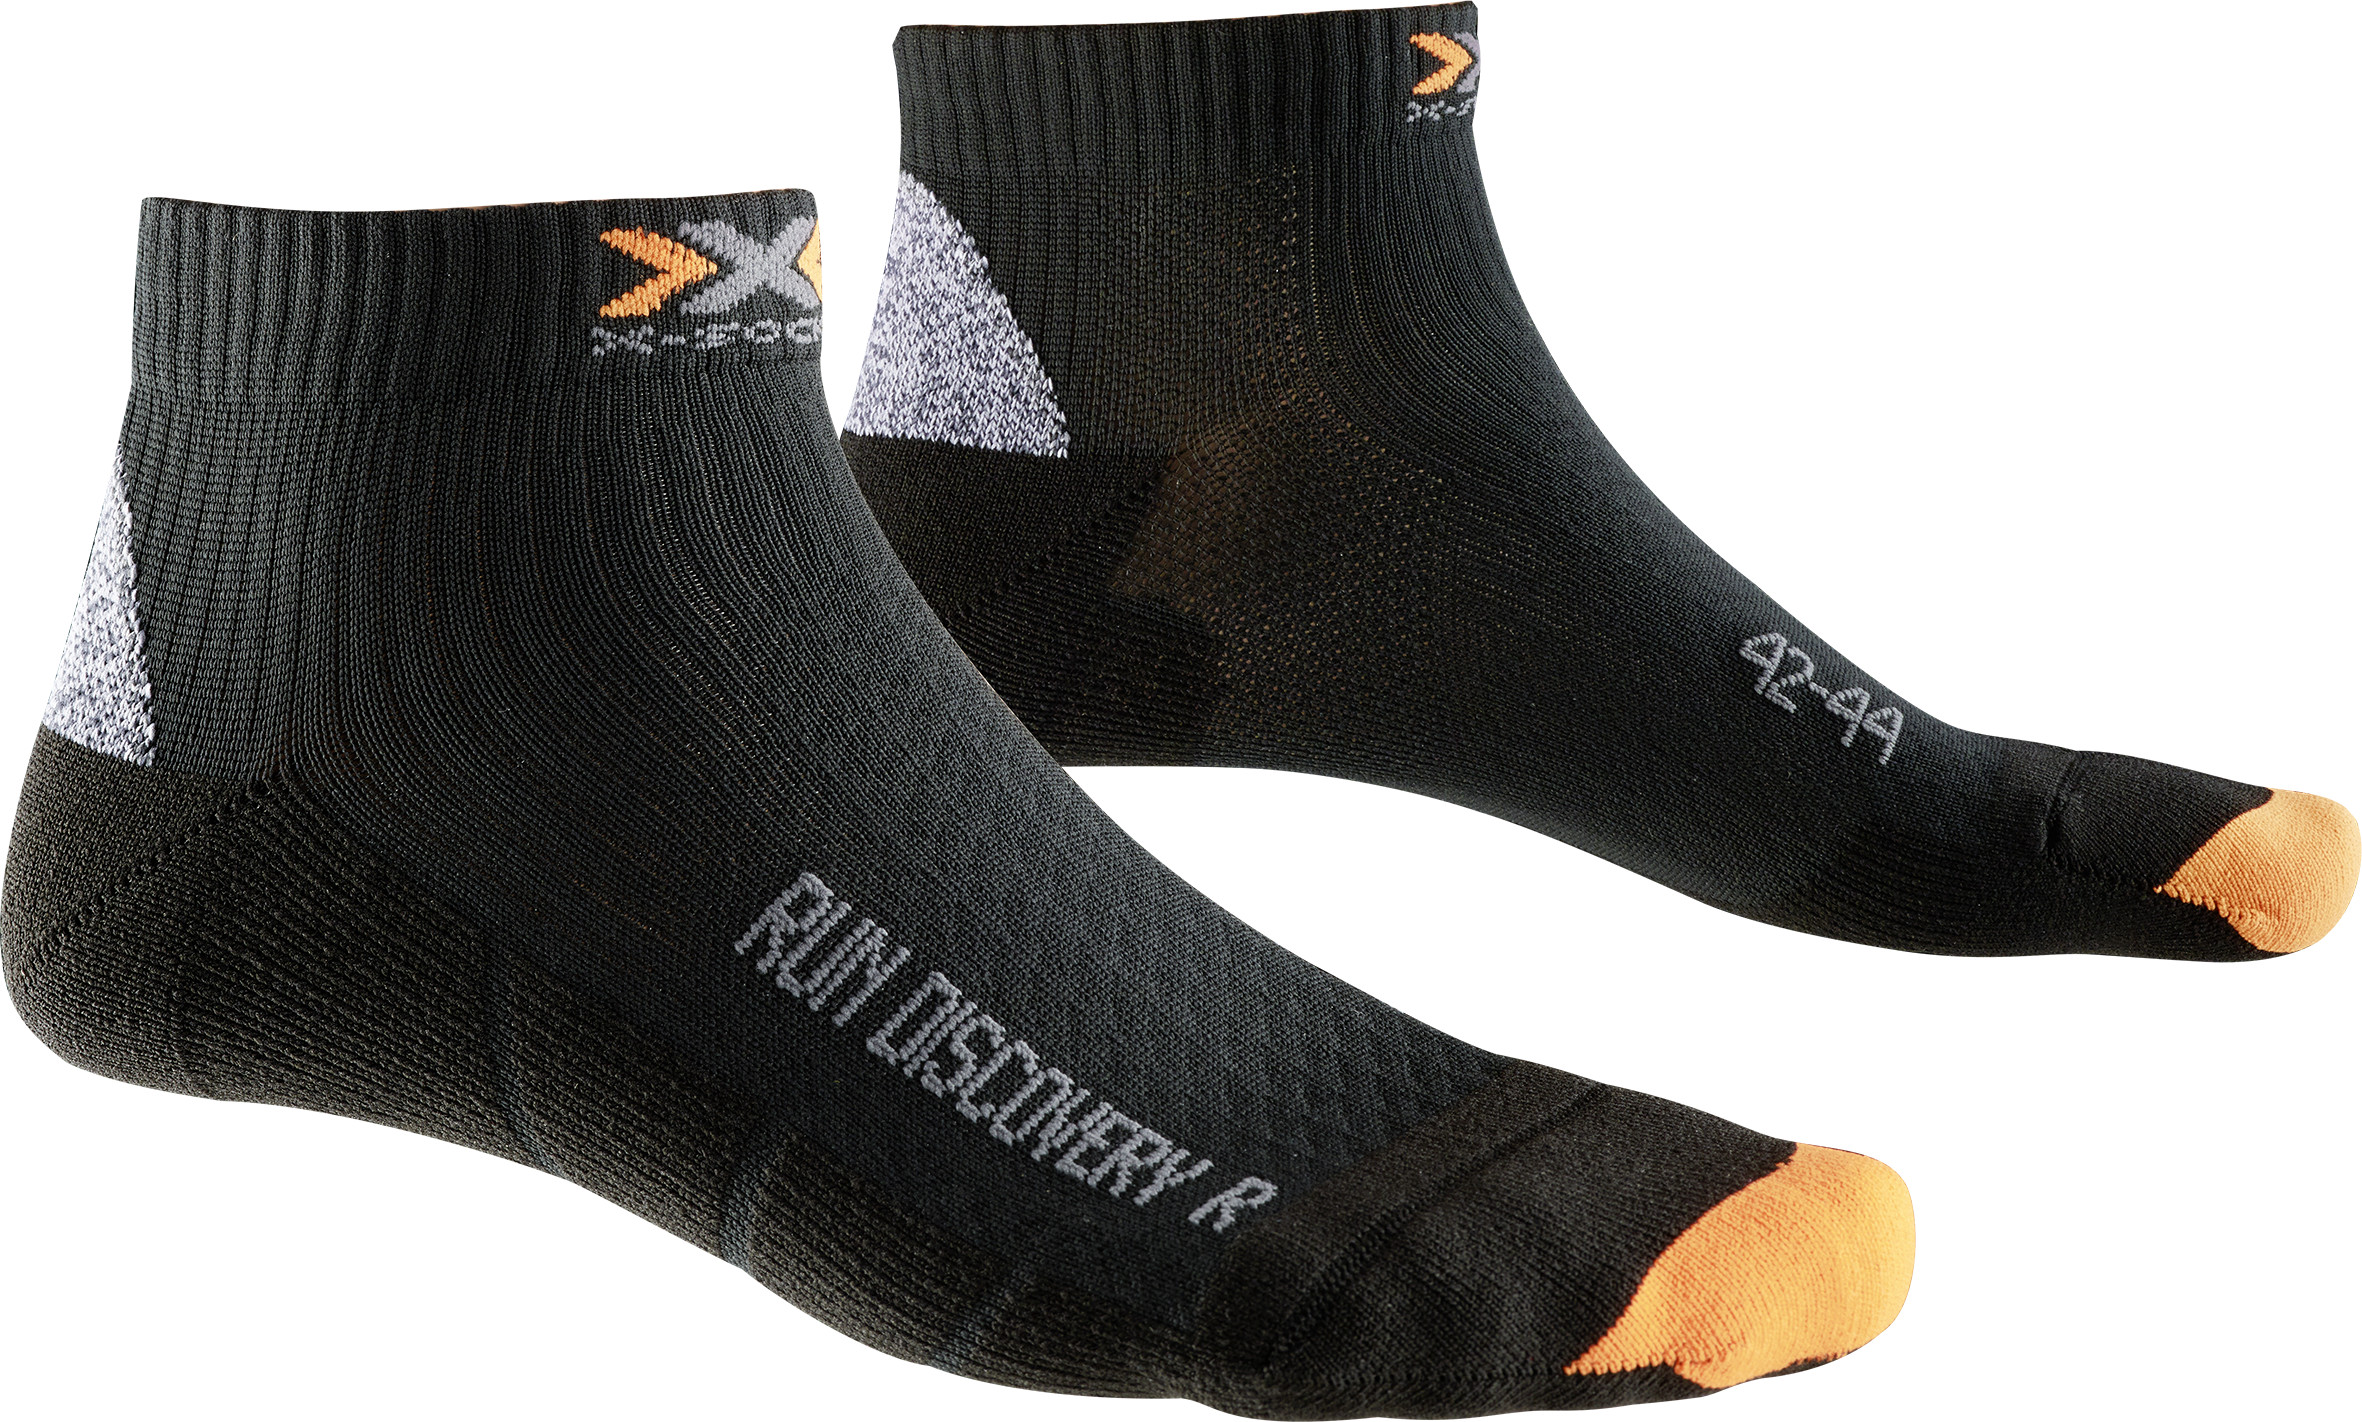 X-SOCKS Socken, Strümpfe Run Discovery schwarz unisex von Gr. 35 - 47 S17-XS1